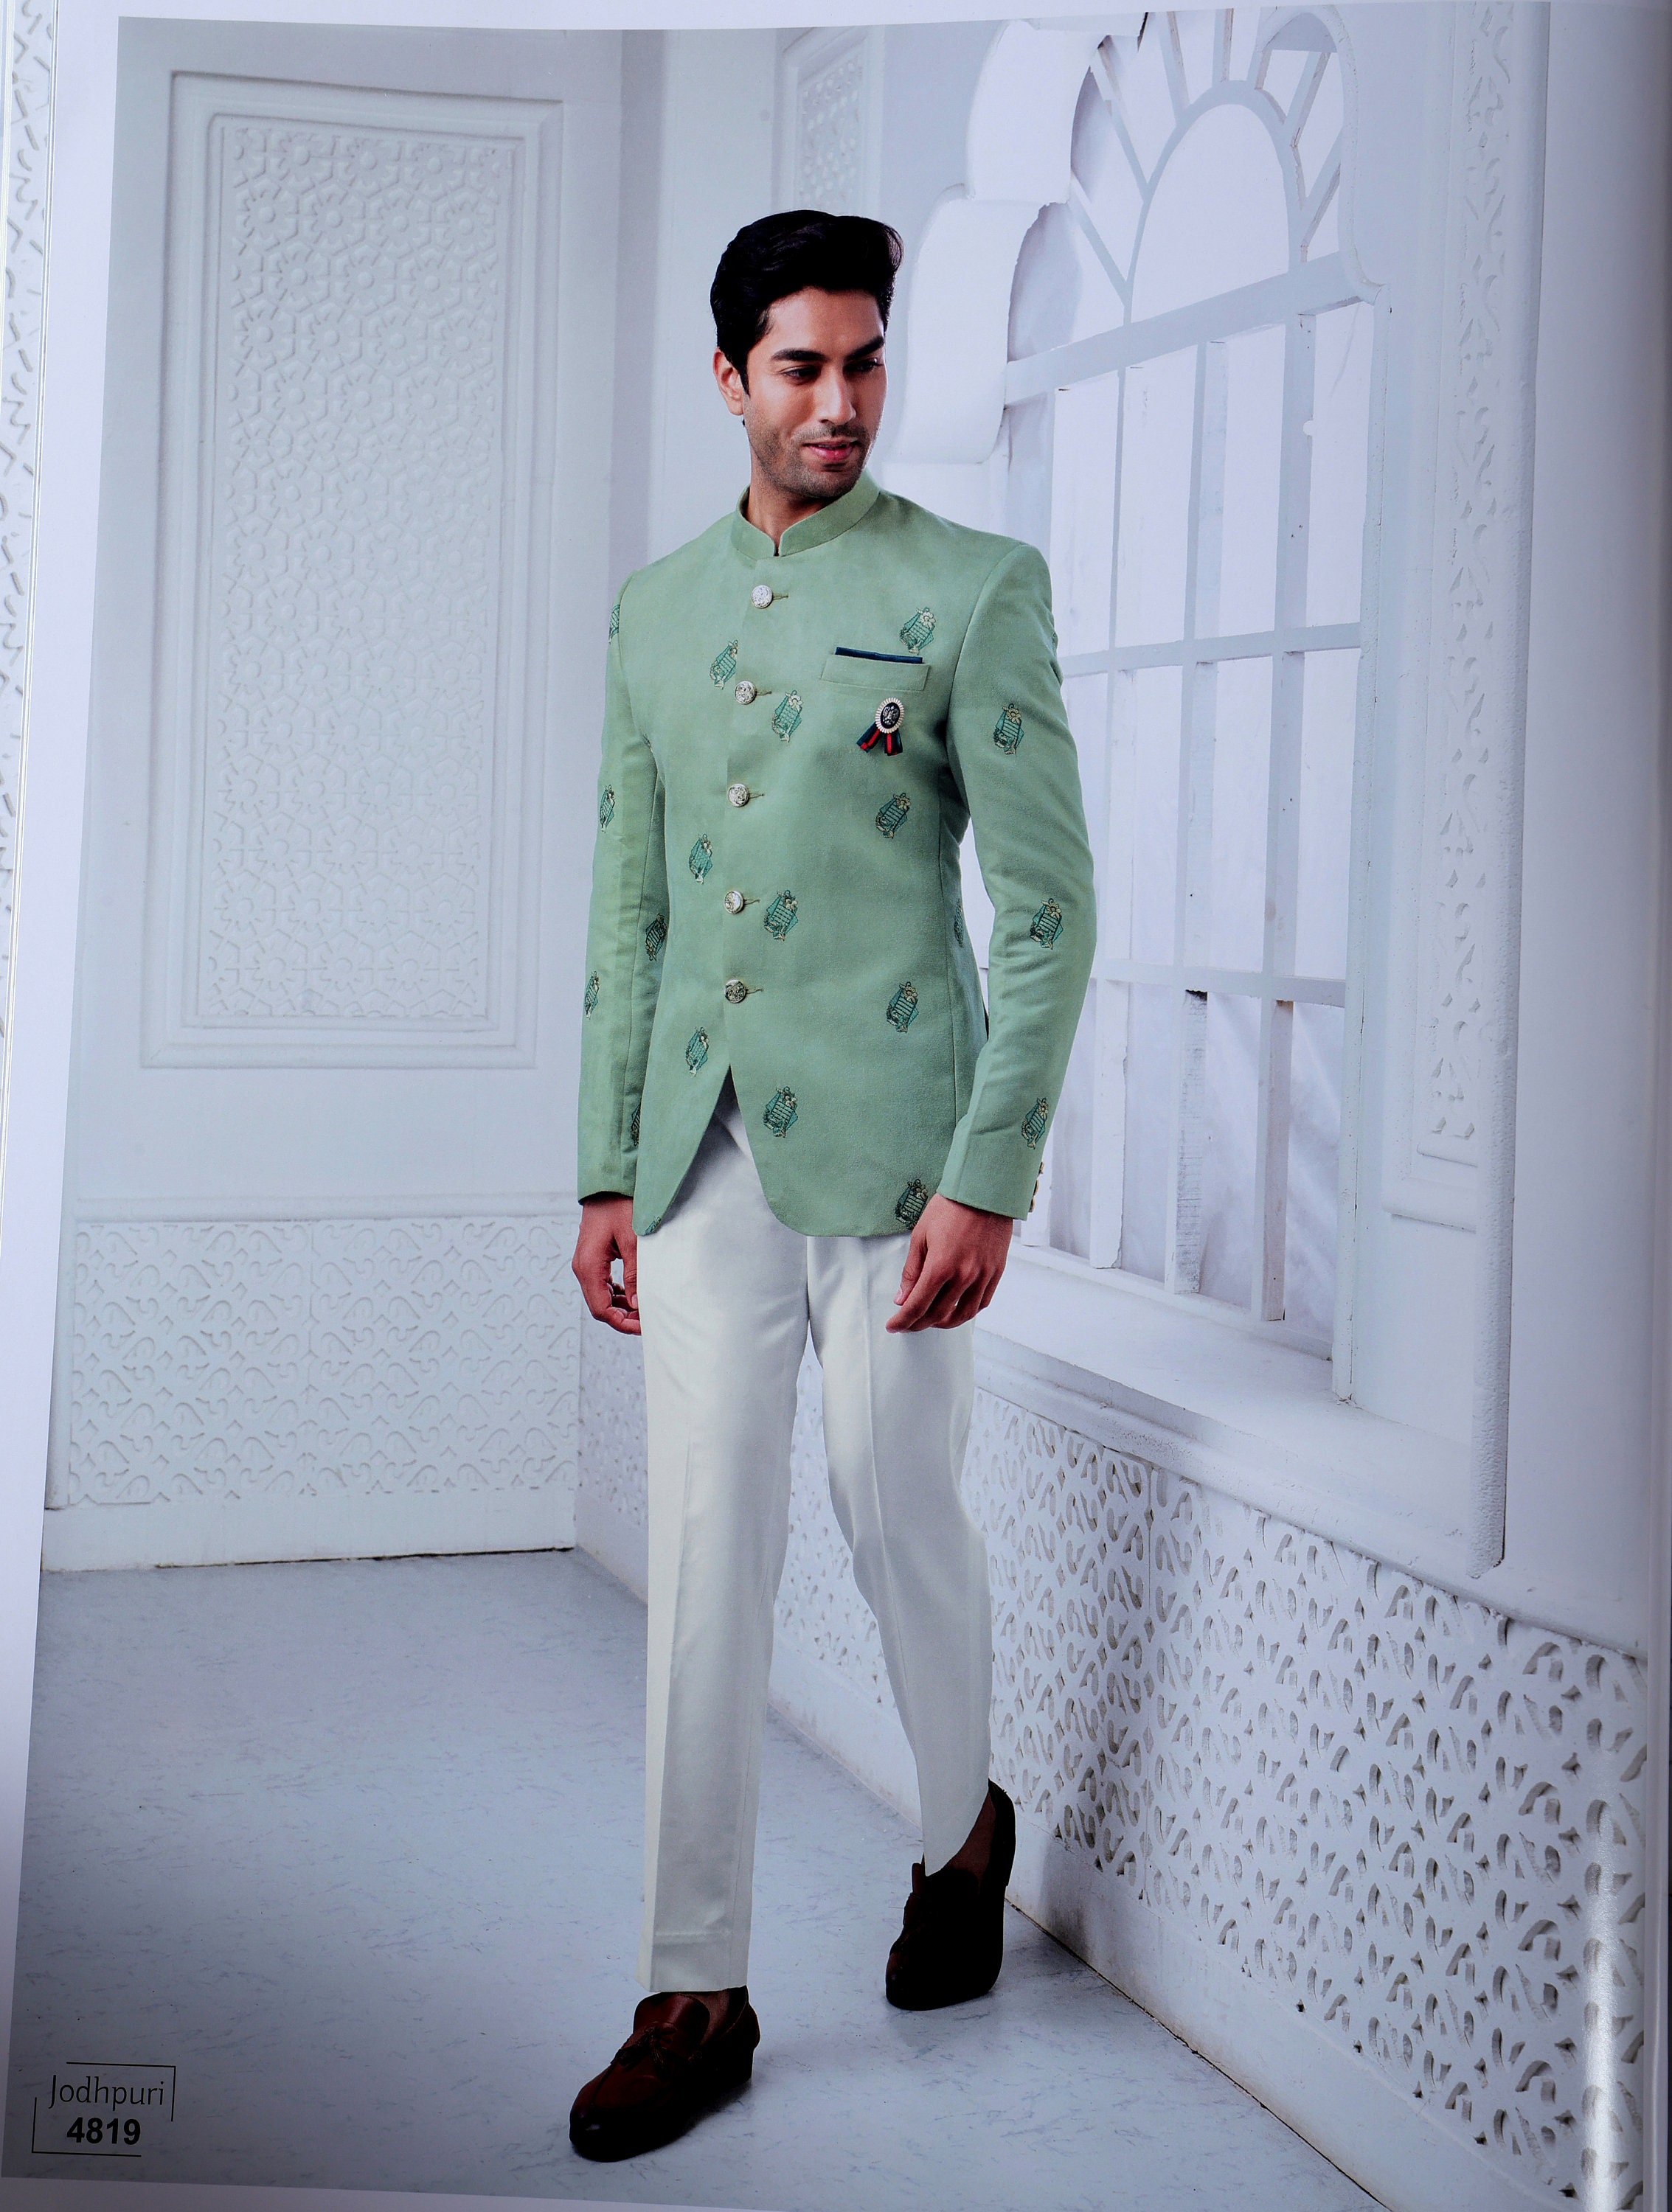 Rama Green Dhoti Style Cotton Silk Kurta Pajama